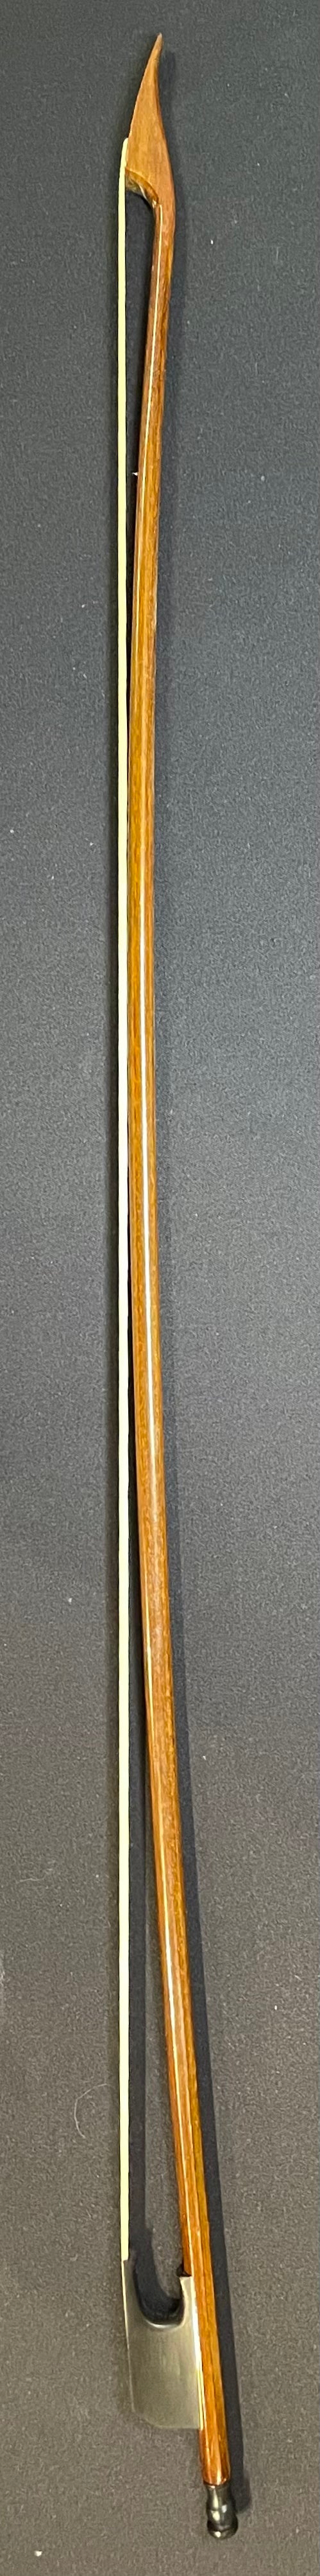 4/4 Violin Bow - Baroque Q02 Model